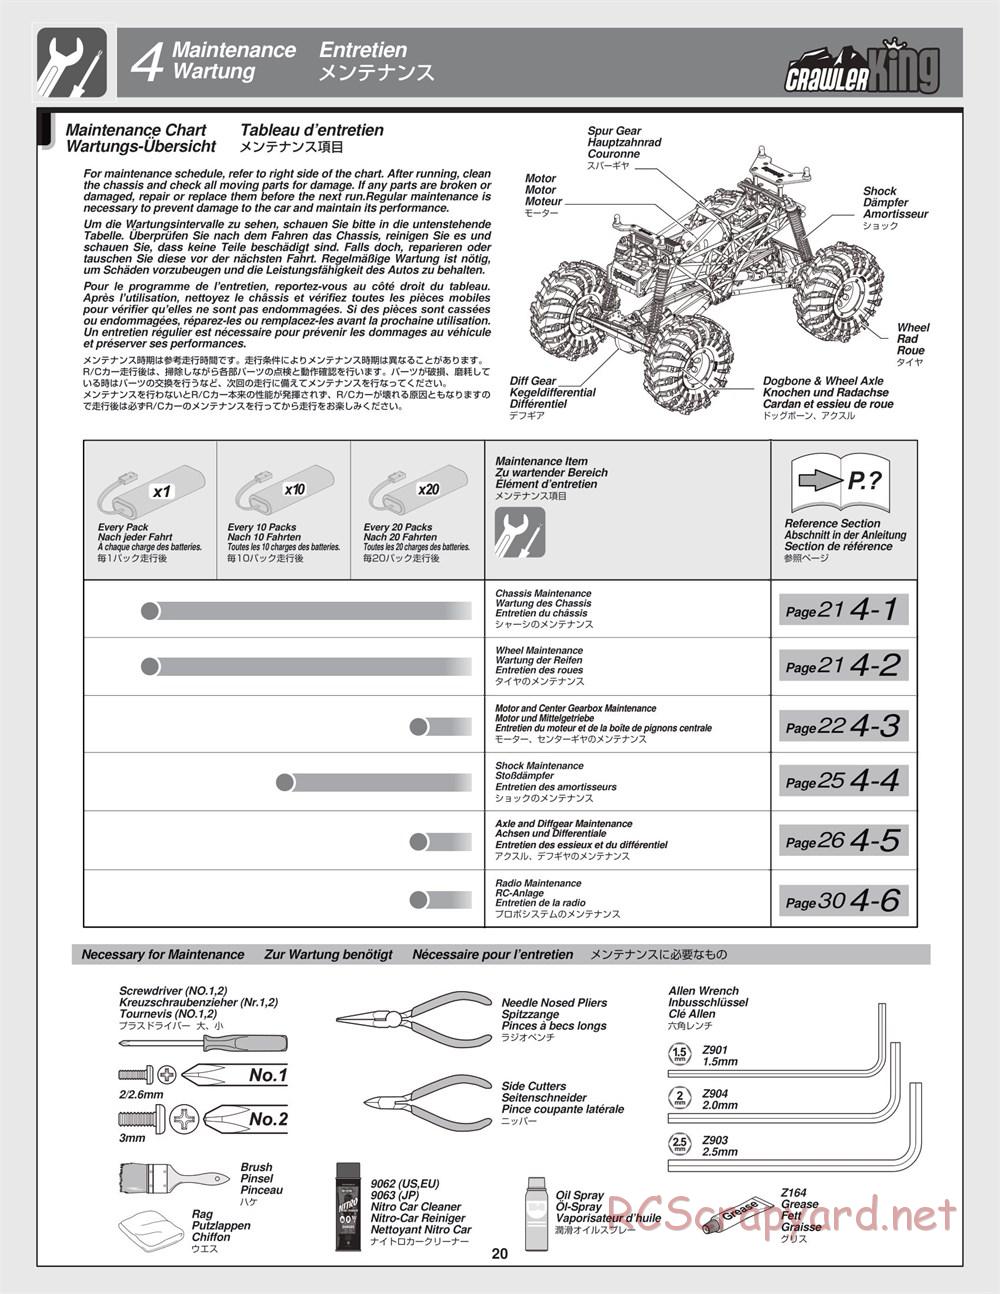 HPI - Crawler King - Manual - Page 20